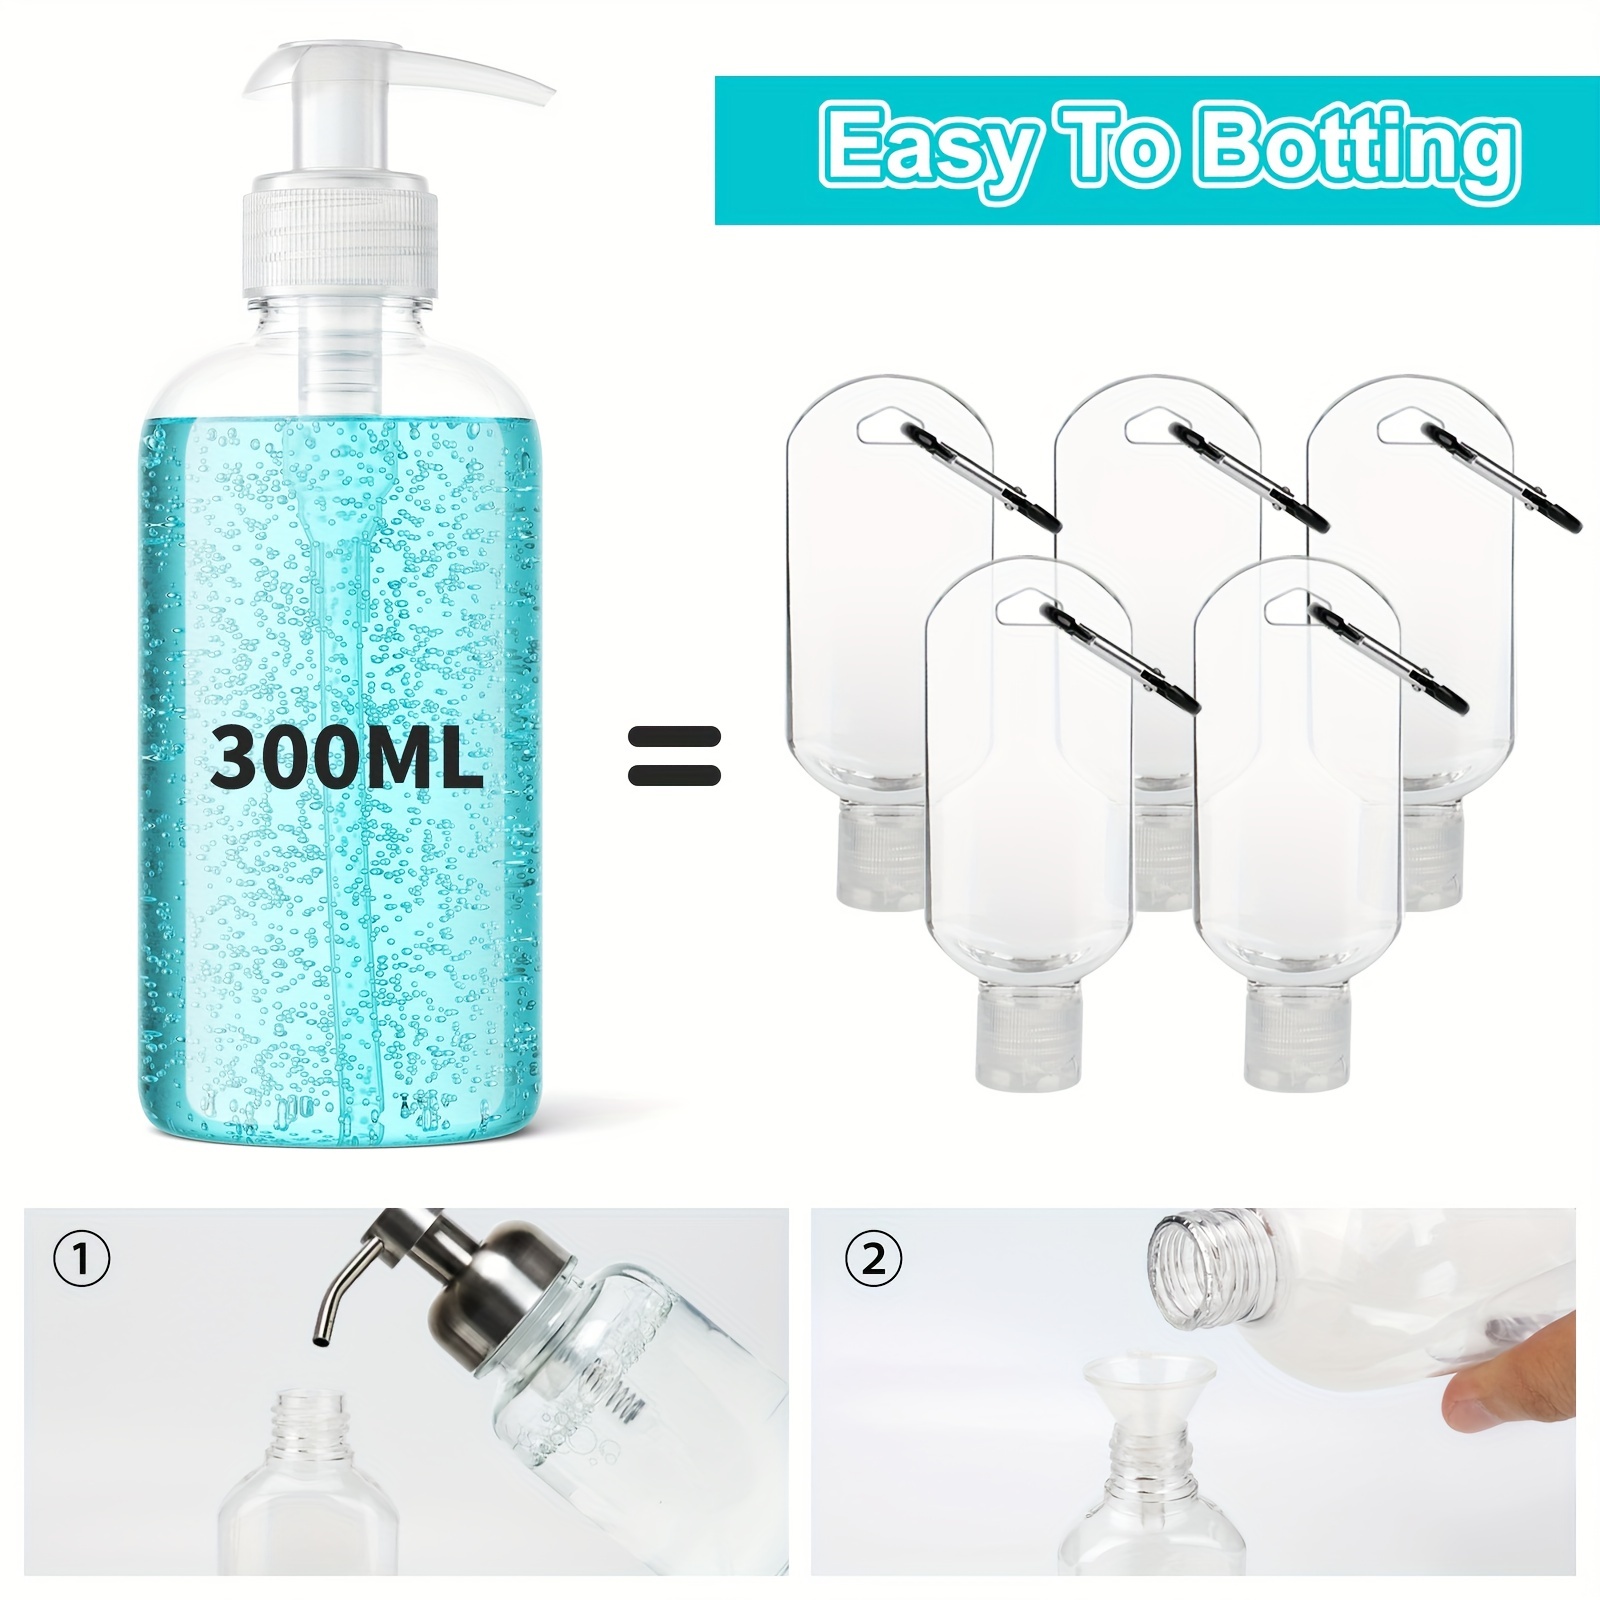 Dispensador de jabón líquido de manos para baño, simple lavado de cerámica,  juego de 6 piezas, loción de diamante, juego de lavado de botellas, jabón